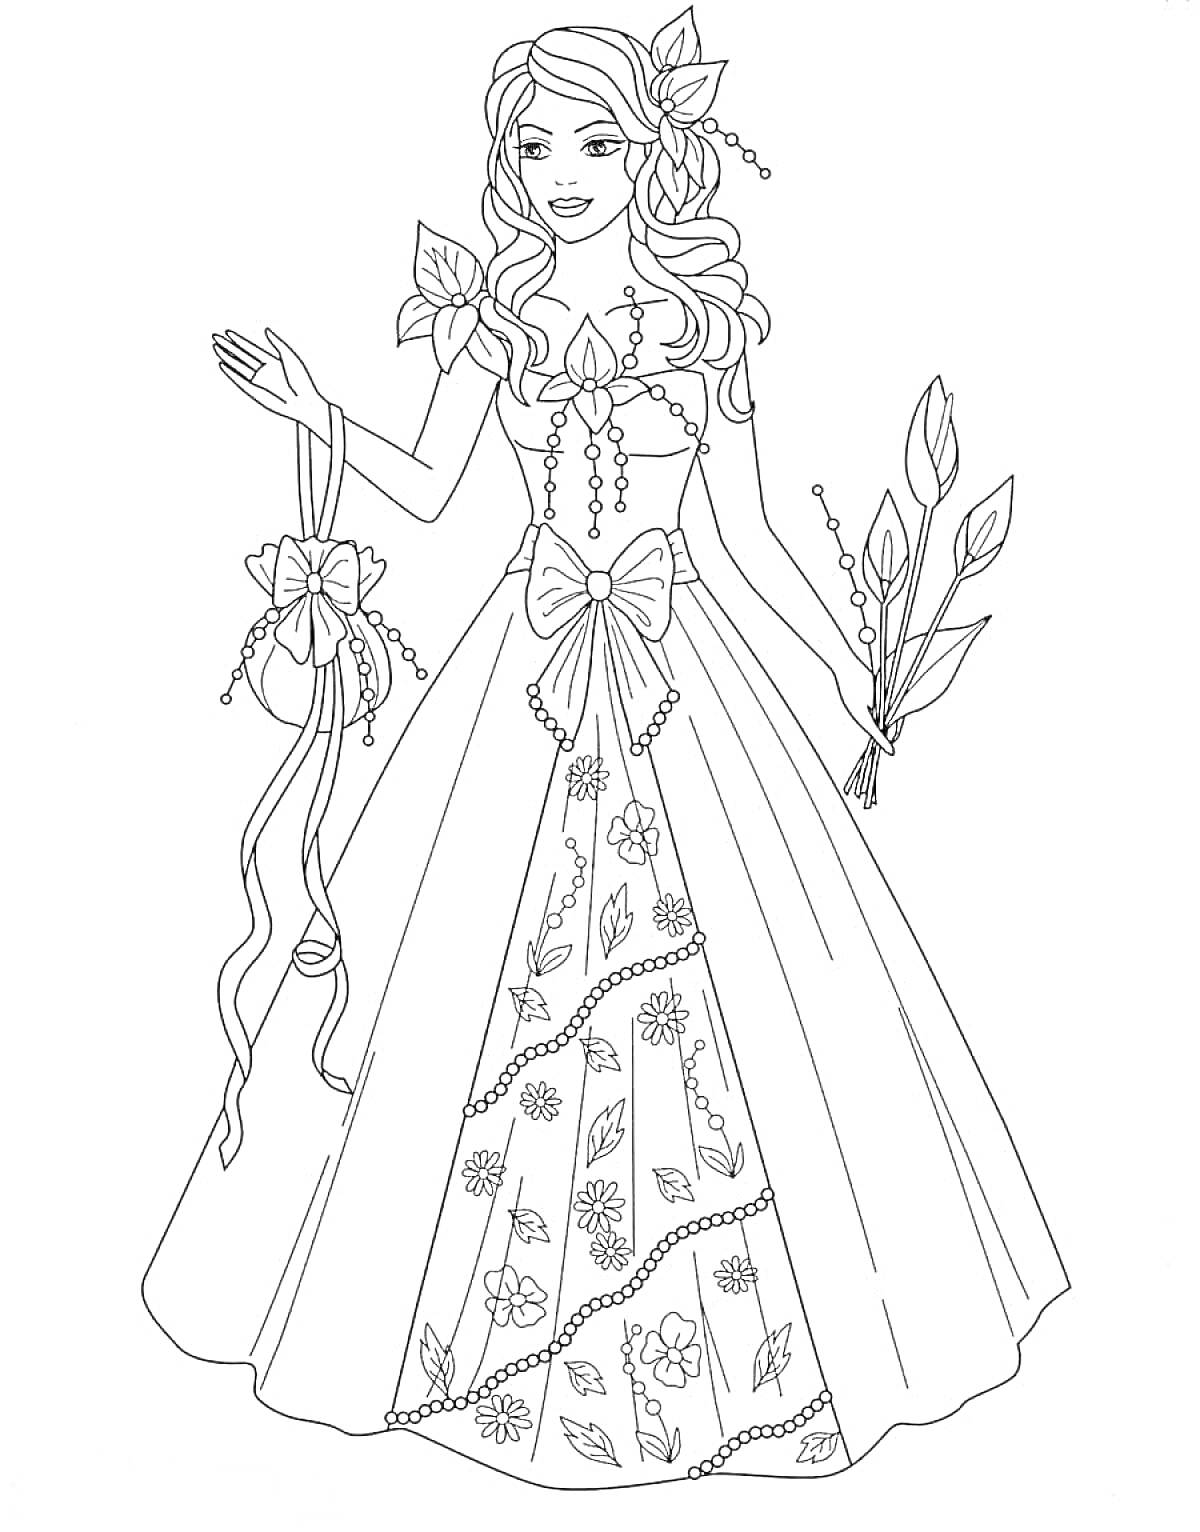 Раскраска Принцесса с цветами и украшенным платьем. На изображении принцесса в длинном платье с цветочным орнаментом, с бантом на поясе, с украшениями на голове, держащая цветы в одной руке и декоративный элемент с лентами в другой руке.